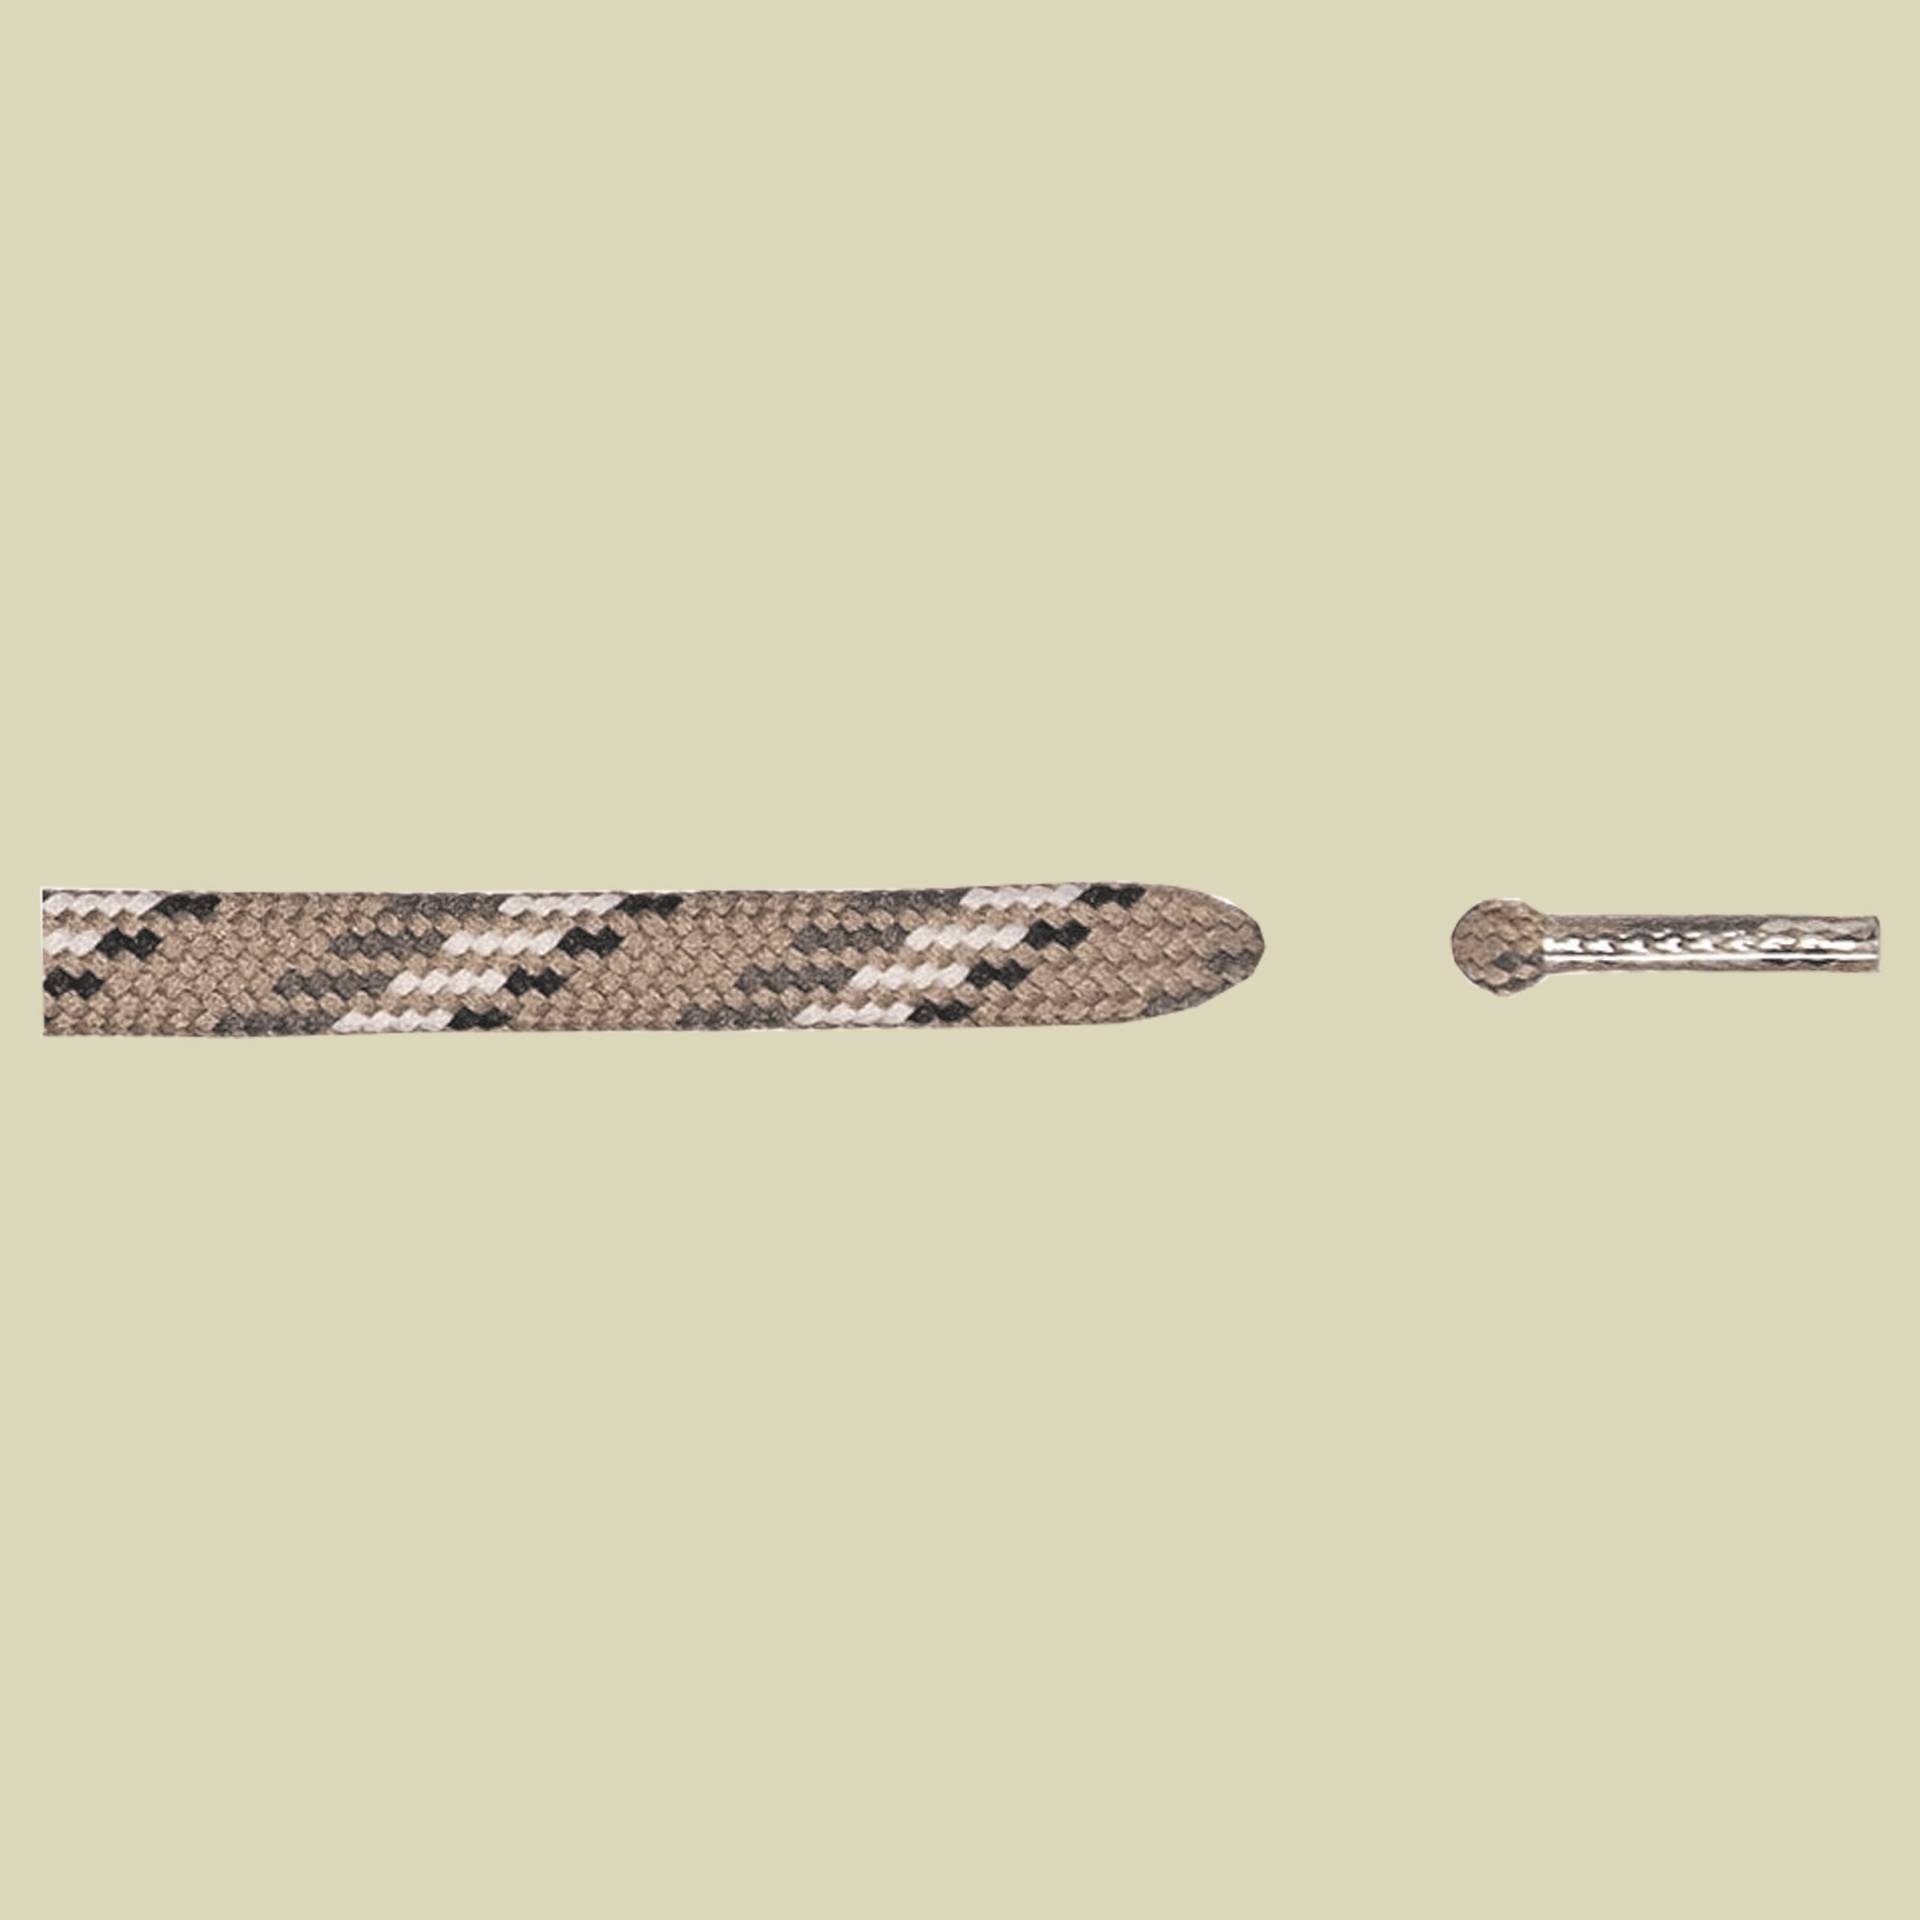 Schuhbandl Bergsport halbrund Länge 180 cm Farbe beige/grau 310 von Barth Schuhbandl